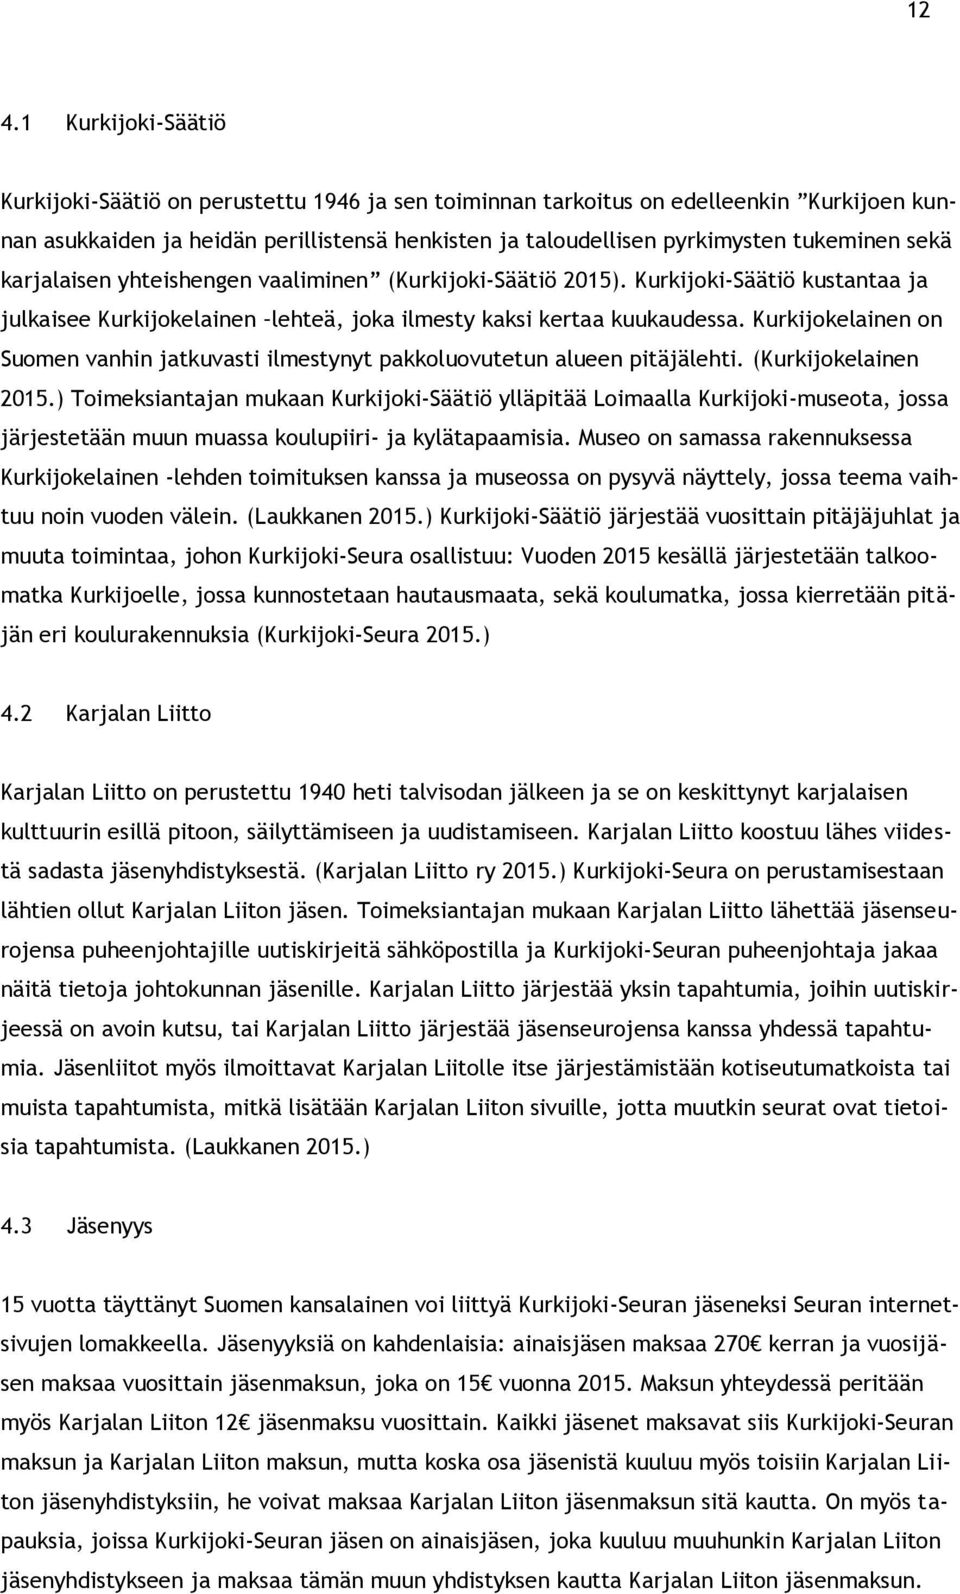 Kurkijokelainen on Suomen vanhin jatkuvasti ilmestynyt pakkoluovutetun alueen pitäjälehti. (Kurkijokelainen 2015.